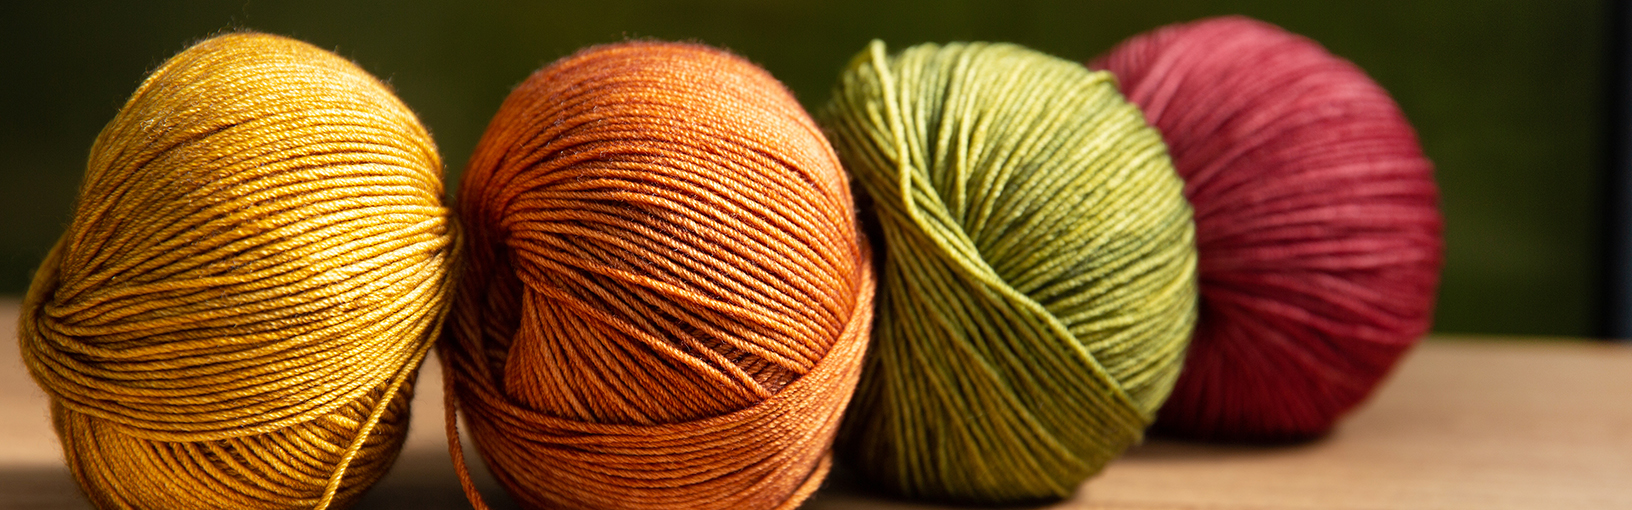 High quality yarns for knitting, crocheting & felting Lana Grossa Yarns | Landlust